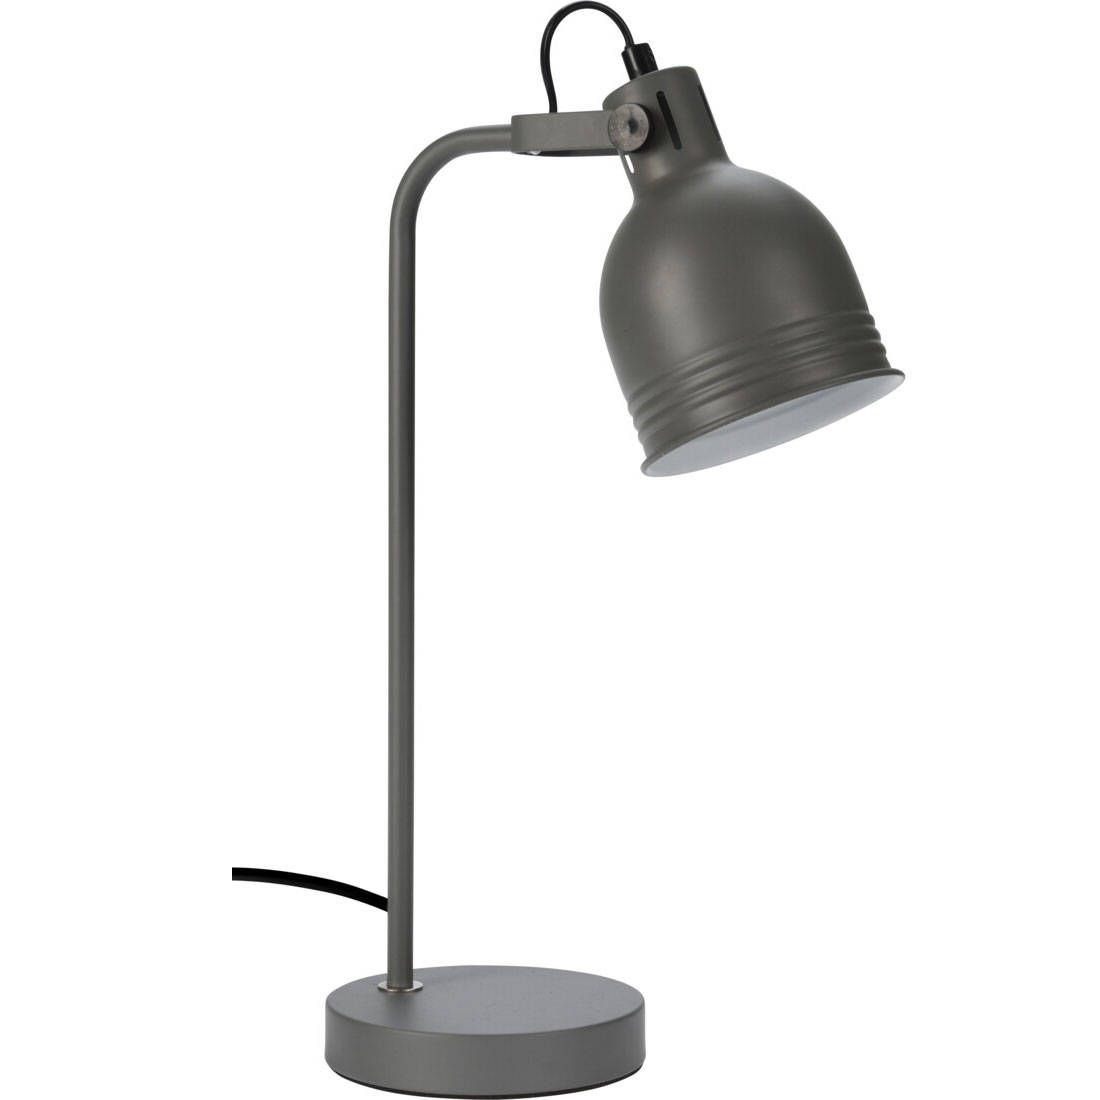 Home Styling Collection Stolní lampa v loftovým stylu, šedý, výška 42 cm - EMAKO.CZ s.r.o.